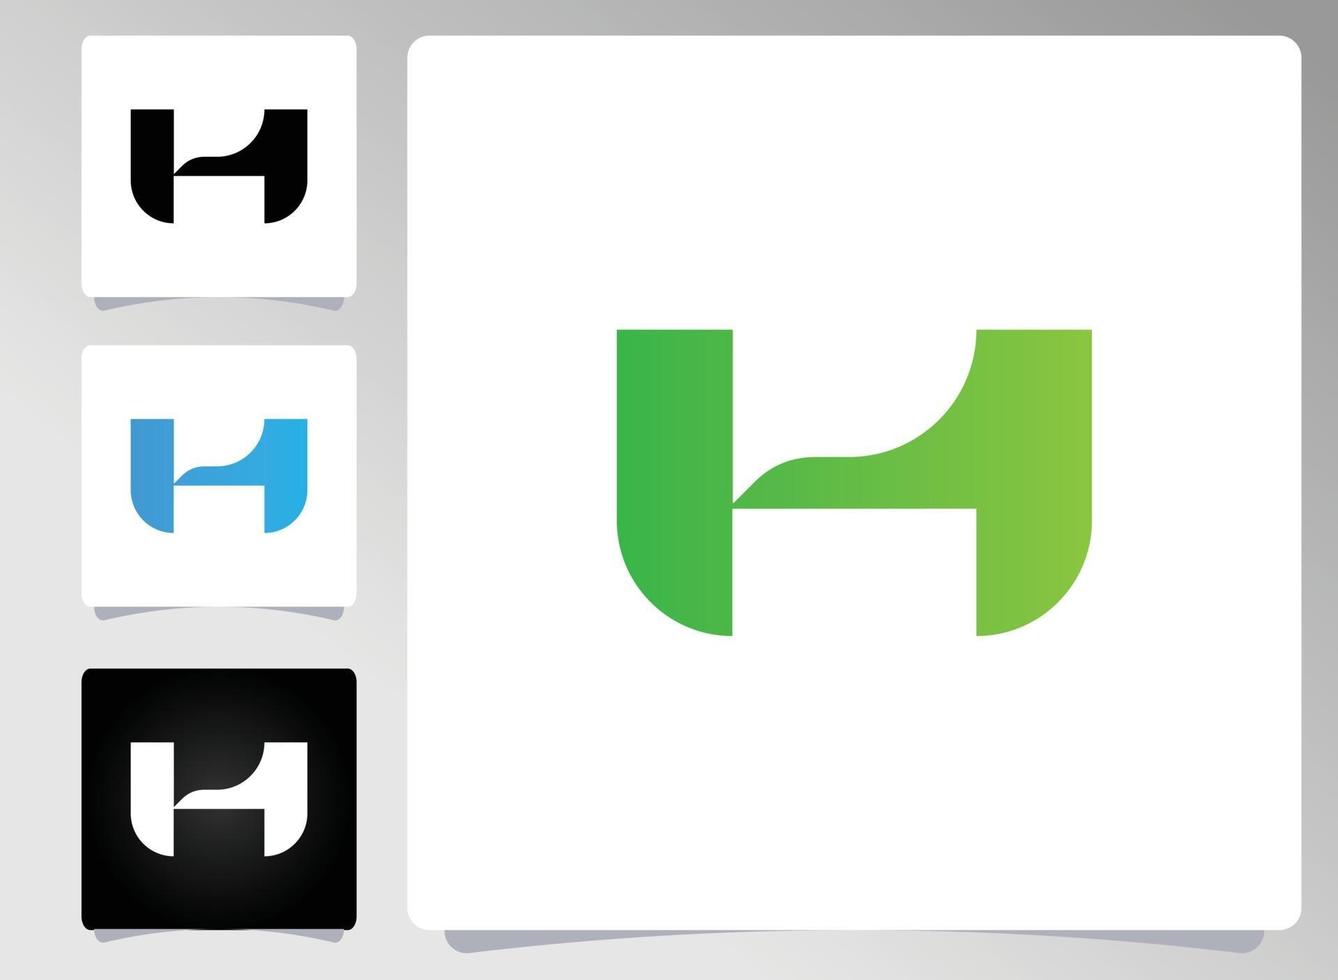 h brev logotyp abstrakt design vektor